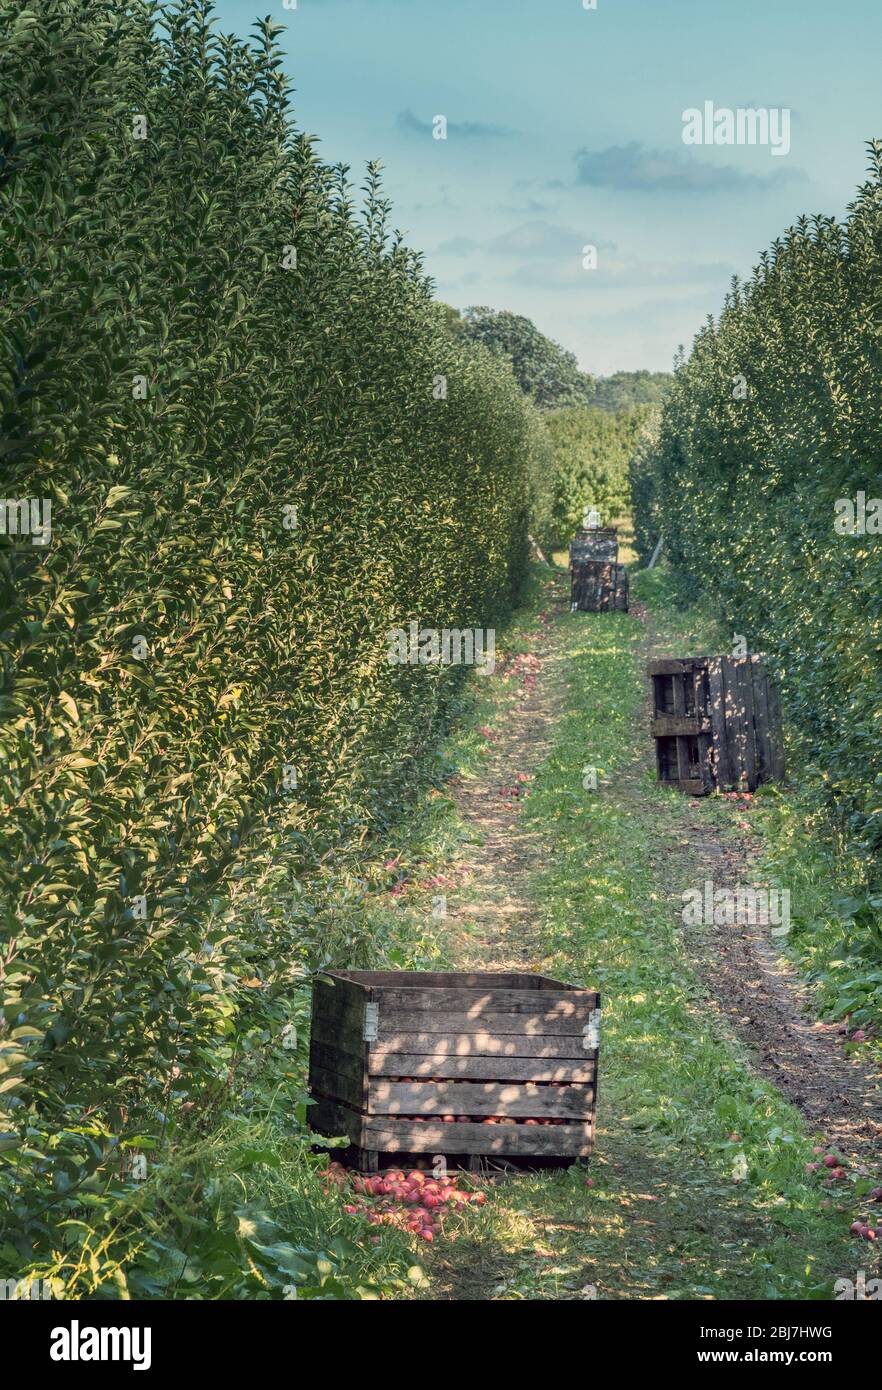 En este huerto de manzanas de Michigan, Estados Unidos, se están recogiendo cajas de manzanas frescas Foto de stock